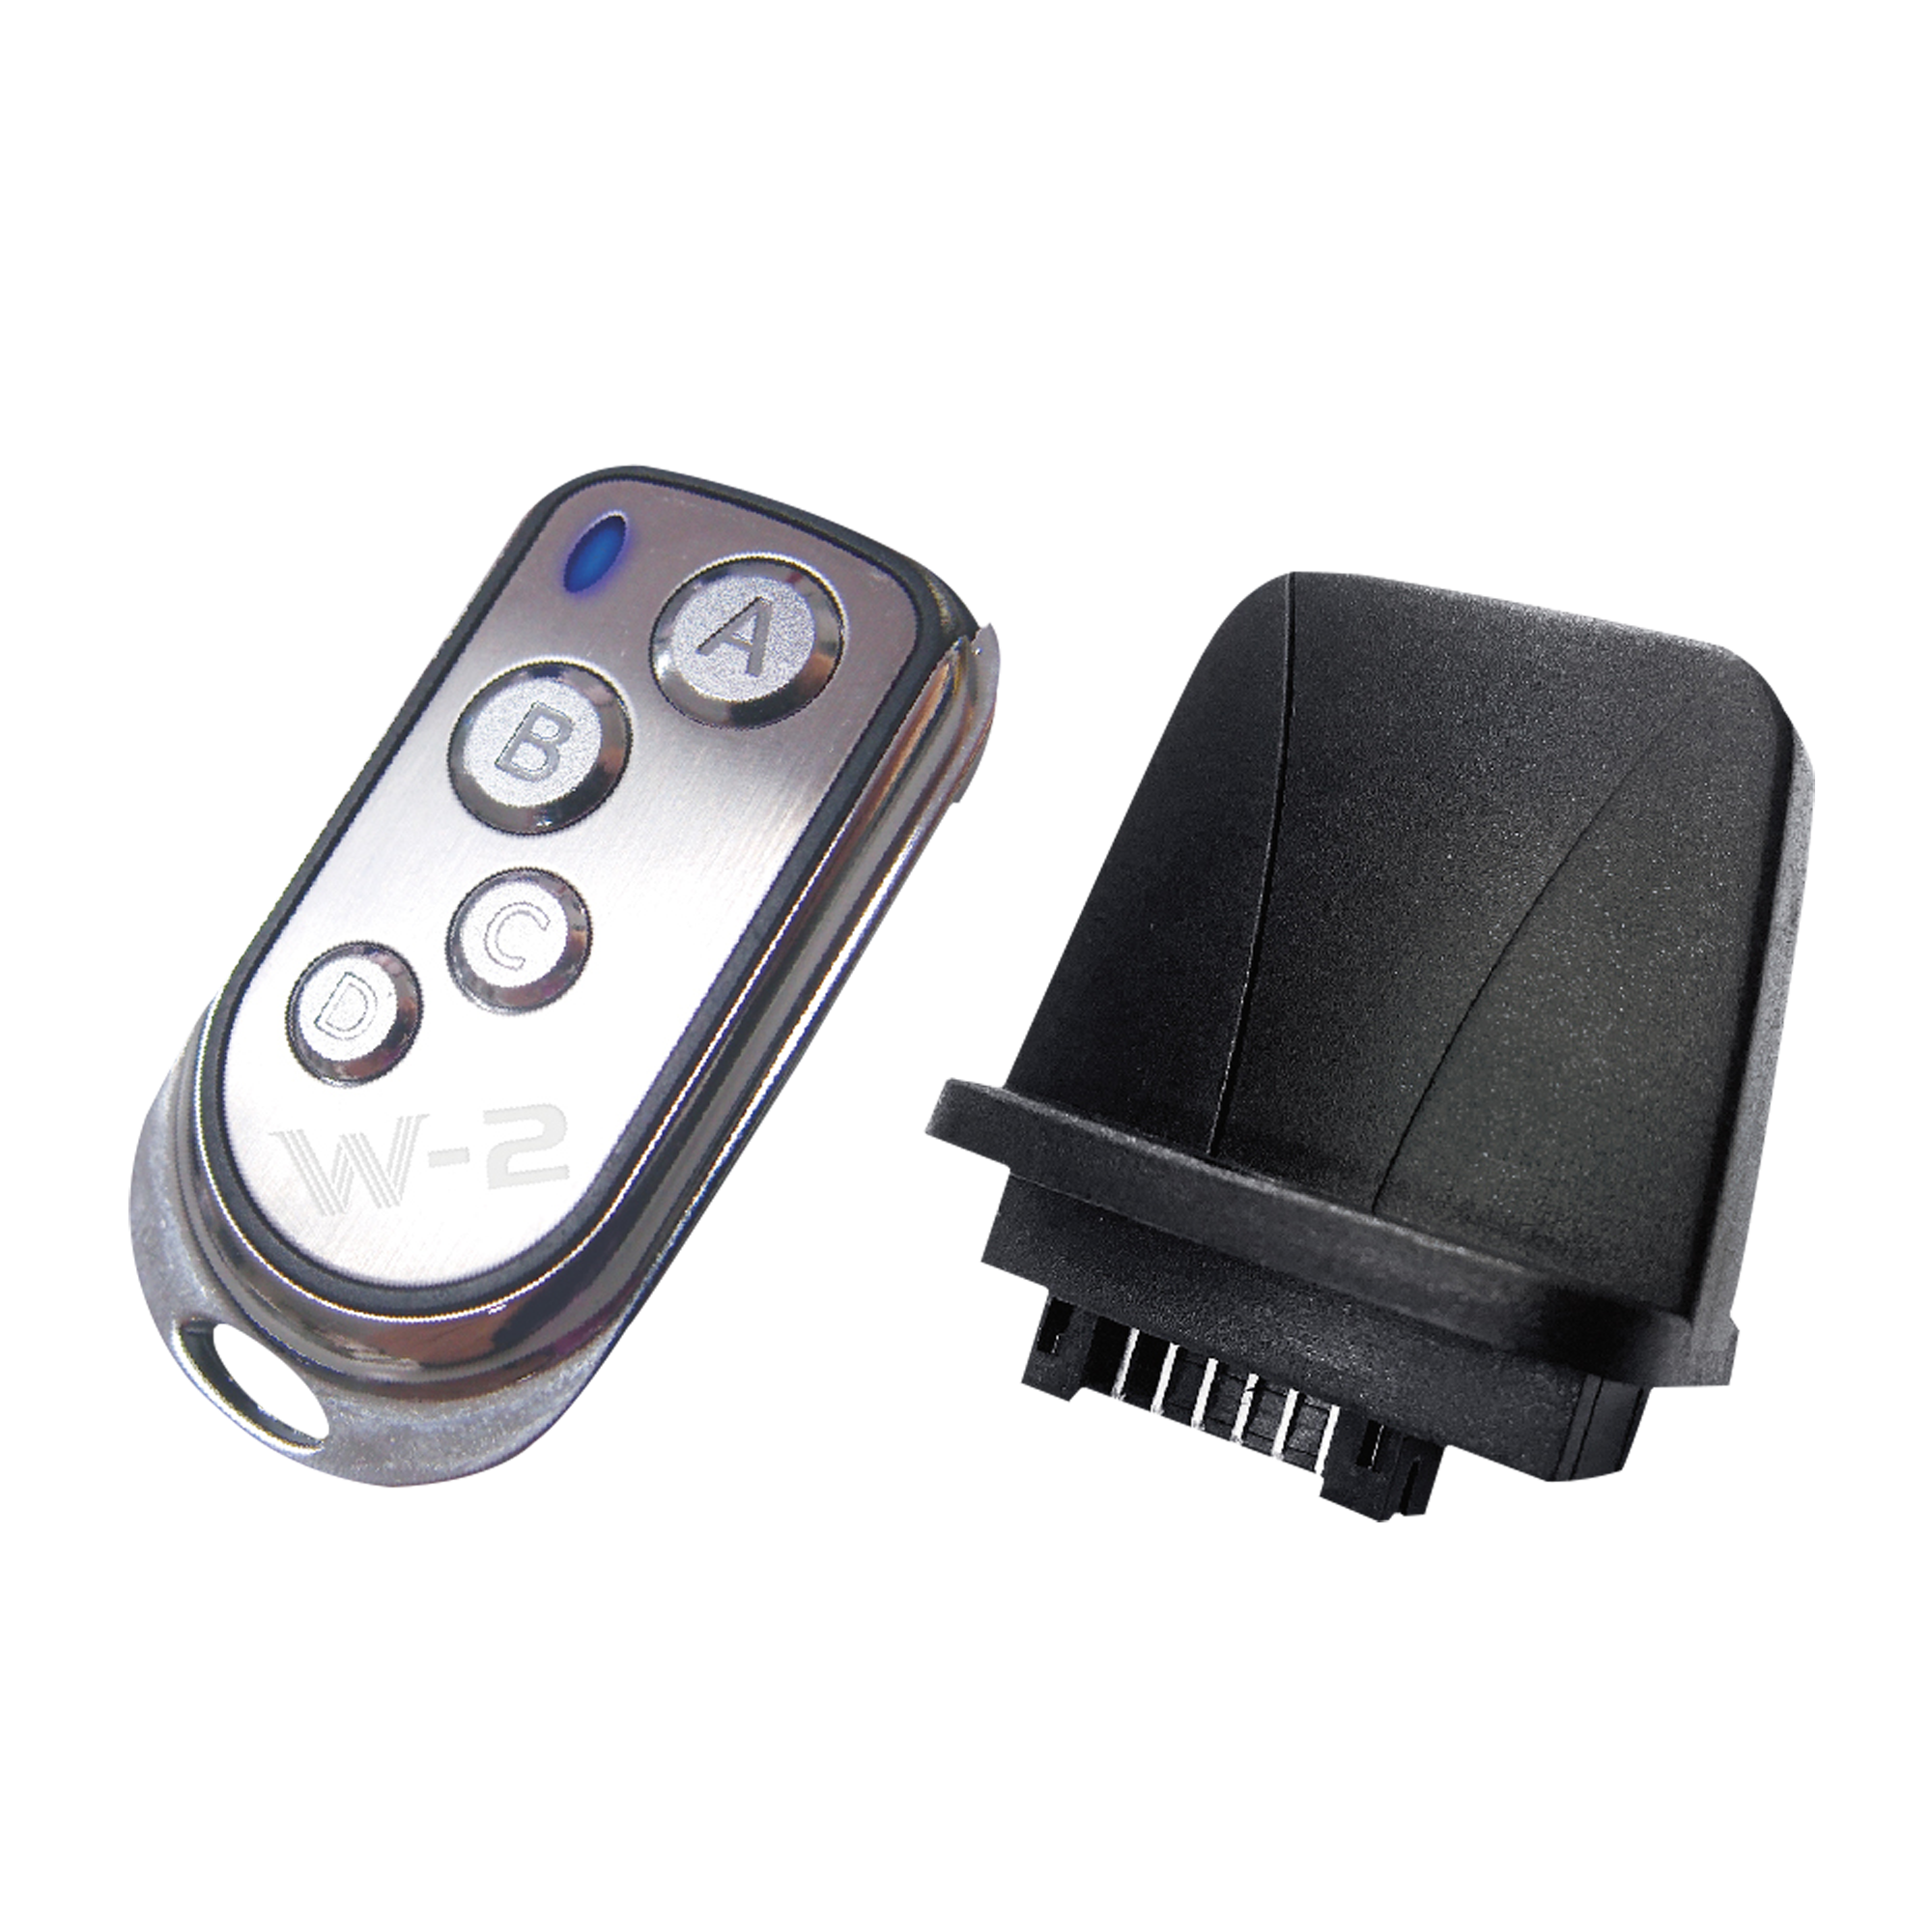 WTR-20 Wireless Remote Kit - Onlinediscowinkel.nl